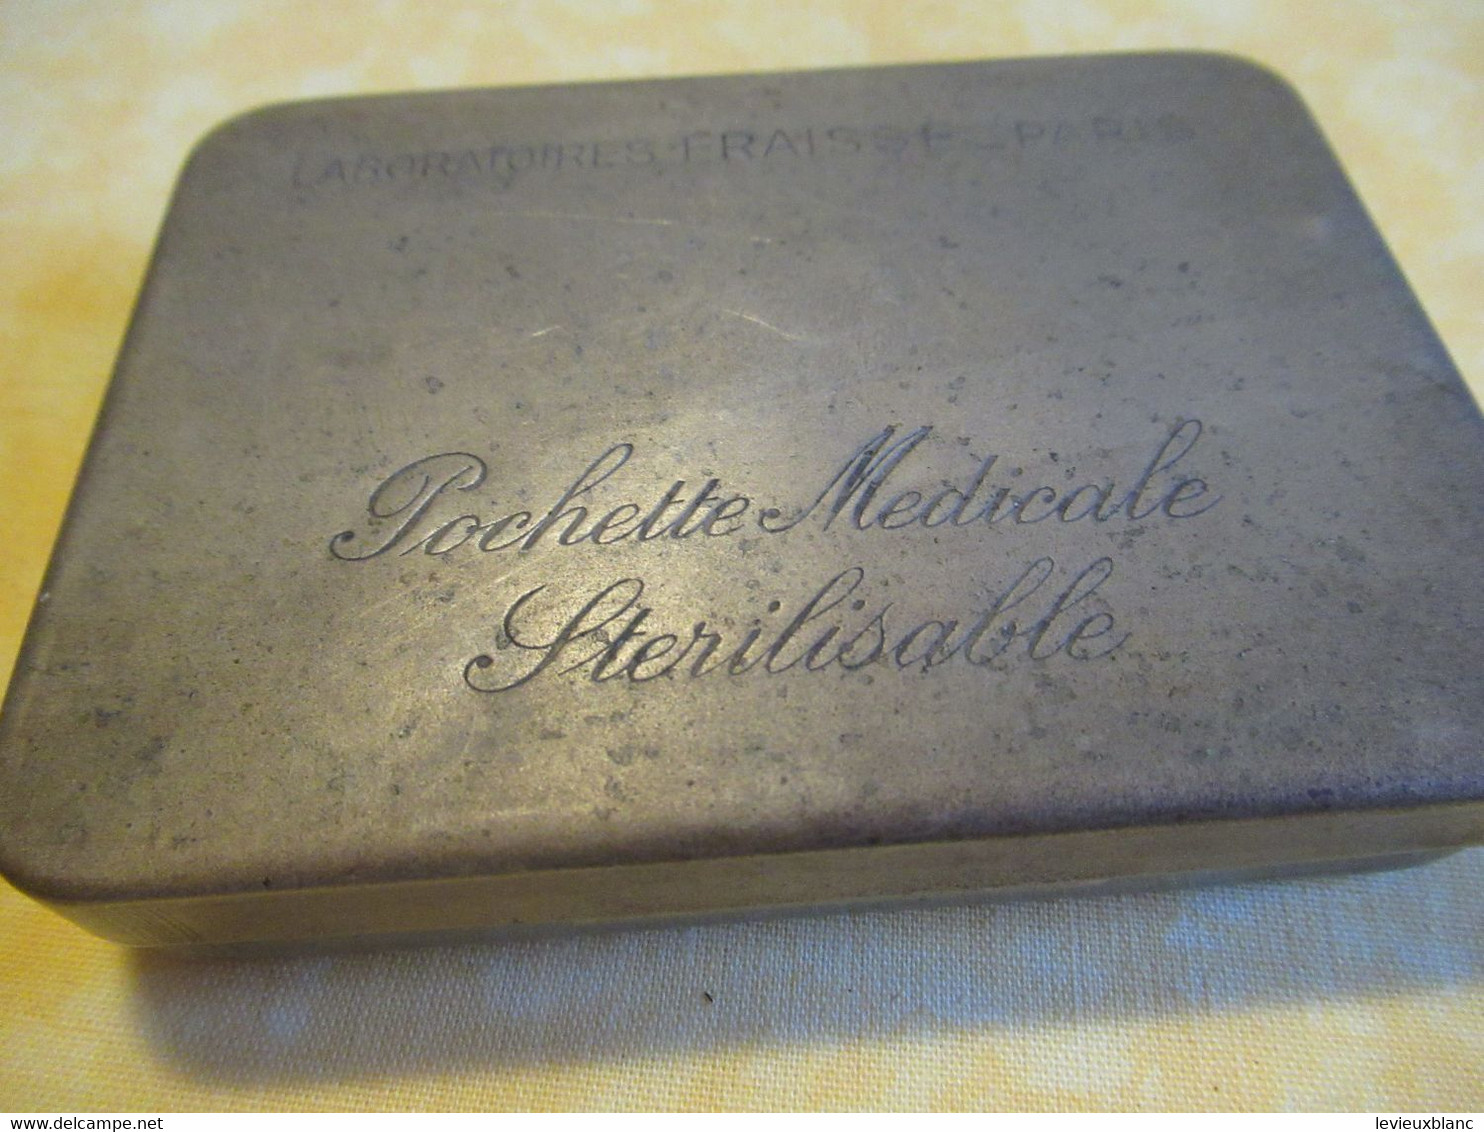 Boite Métallique Ancienne/Pochette Médicale Stérilisable/ LABORATOIRES FRAYSSE-PARIS// Vers 1920-1950         BFPP234 - Boxes